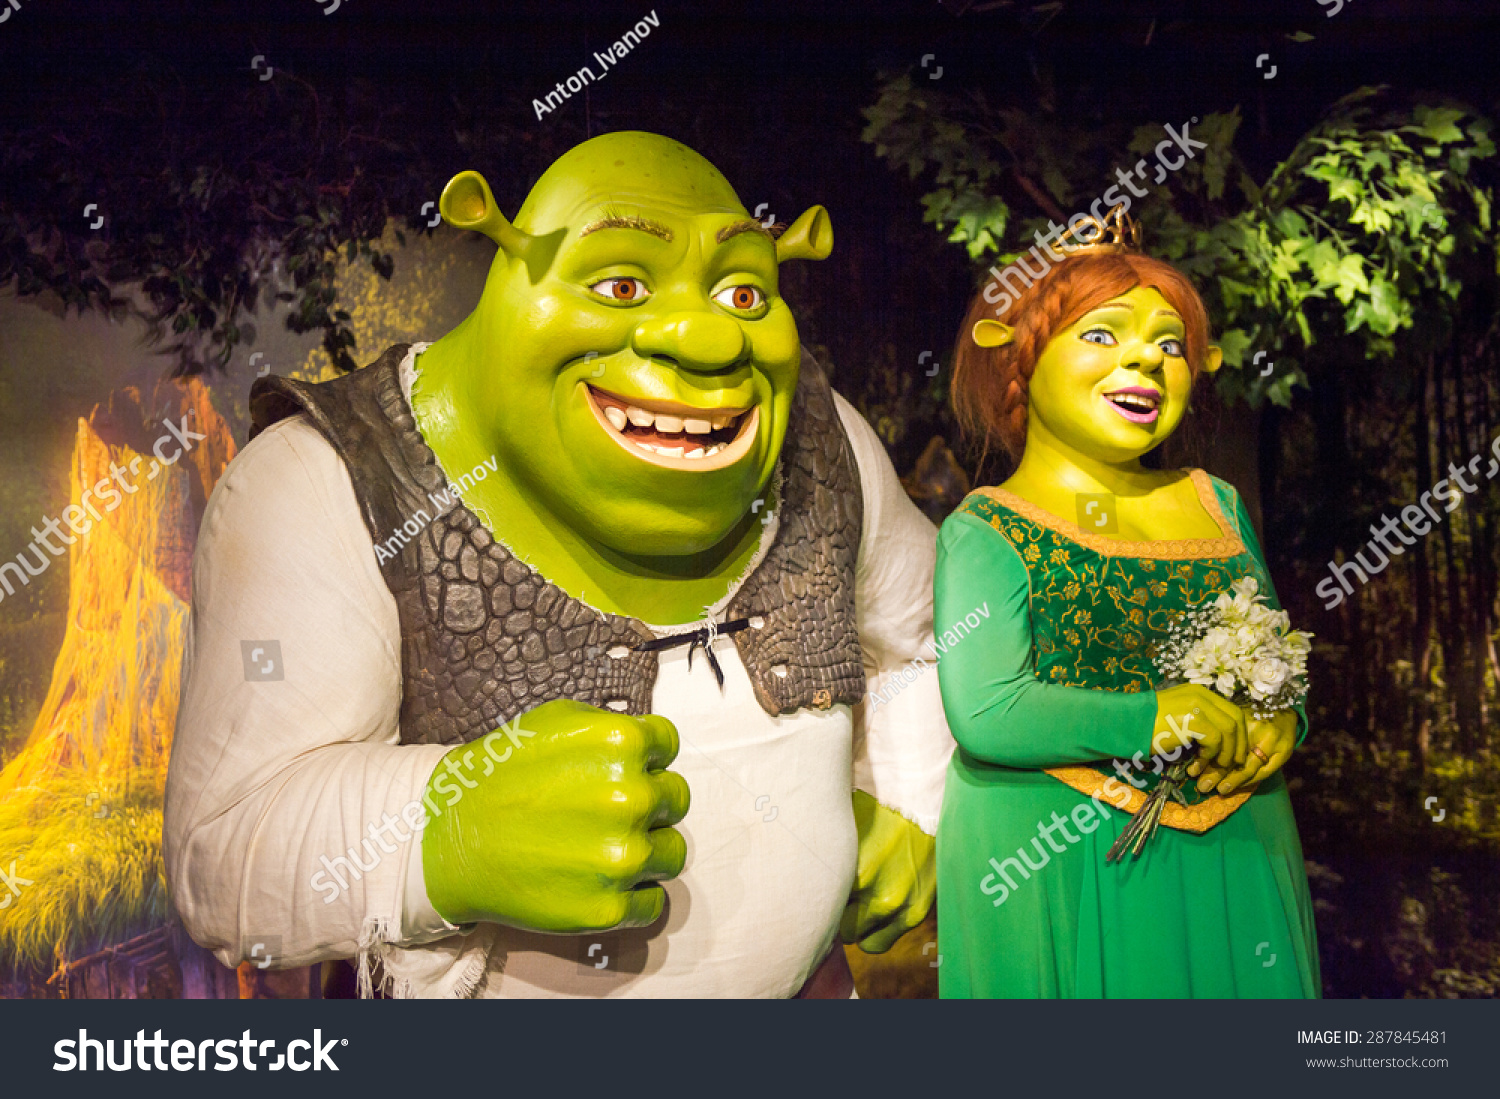 Shrek Fiona Imágenes Fotos De Stock Y Vectores Shutterstock 4379